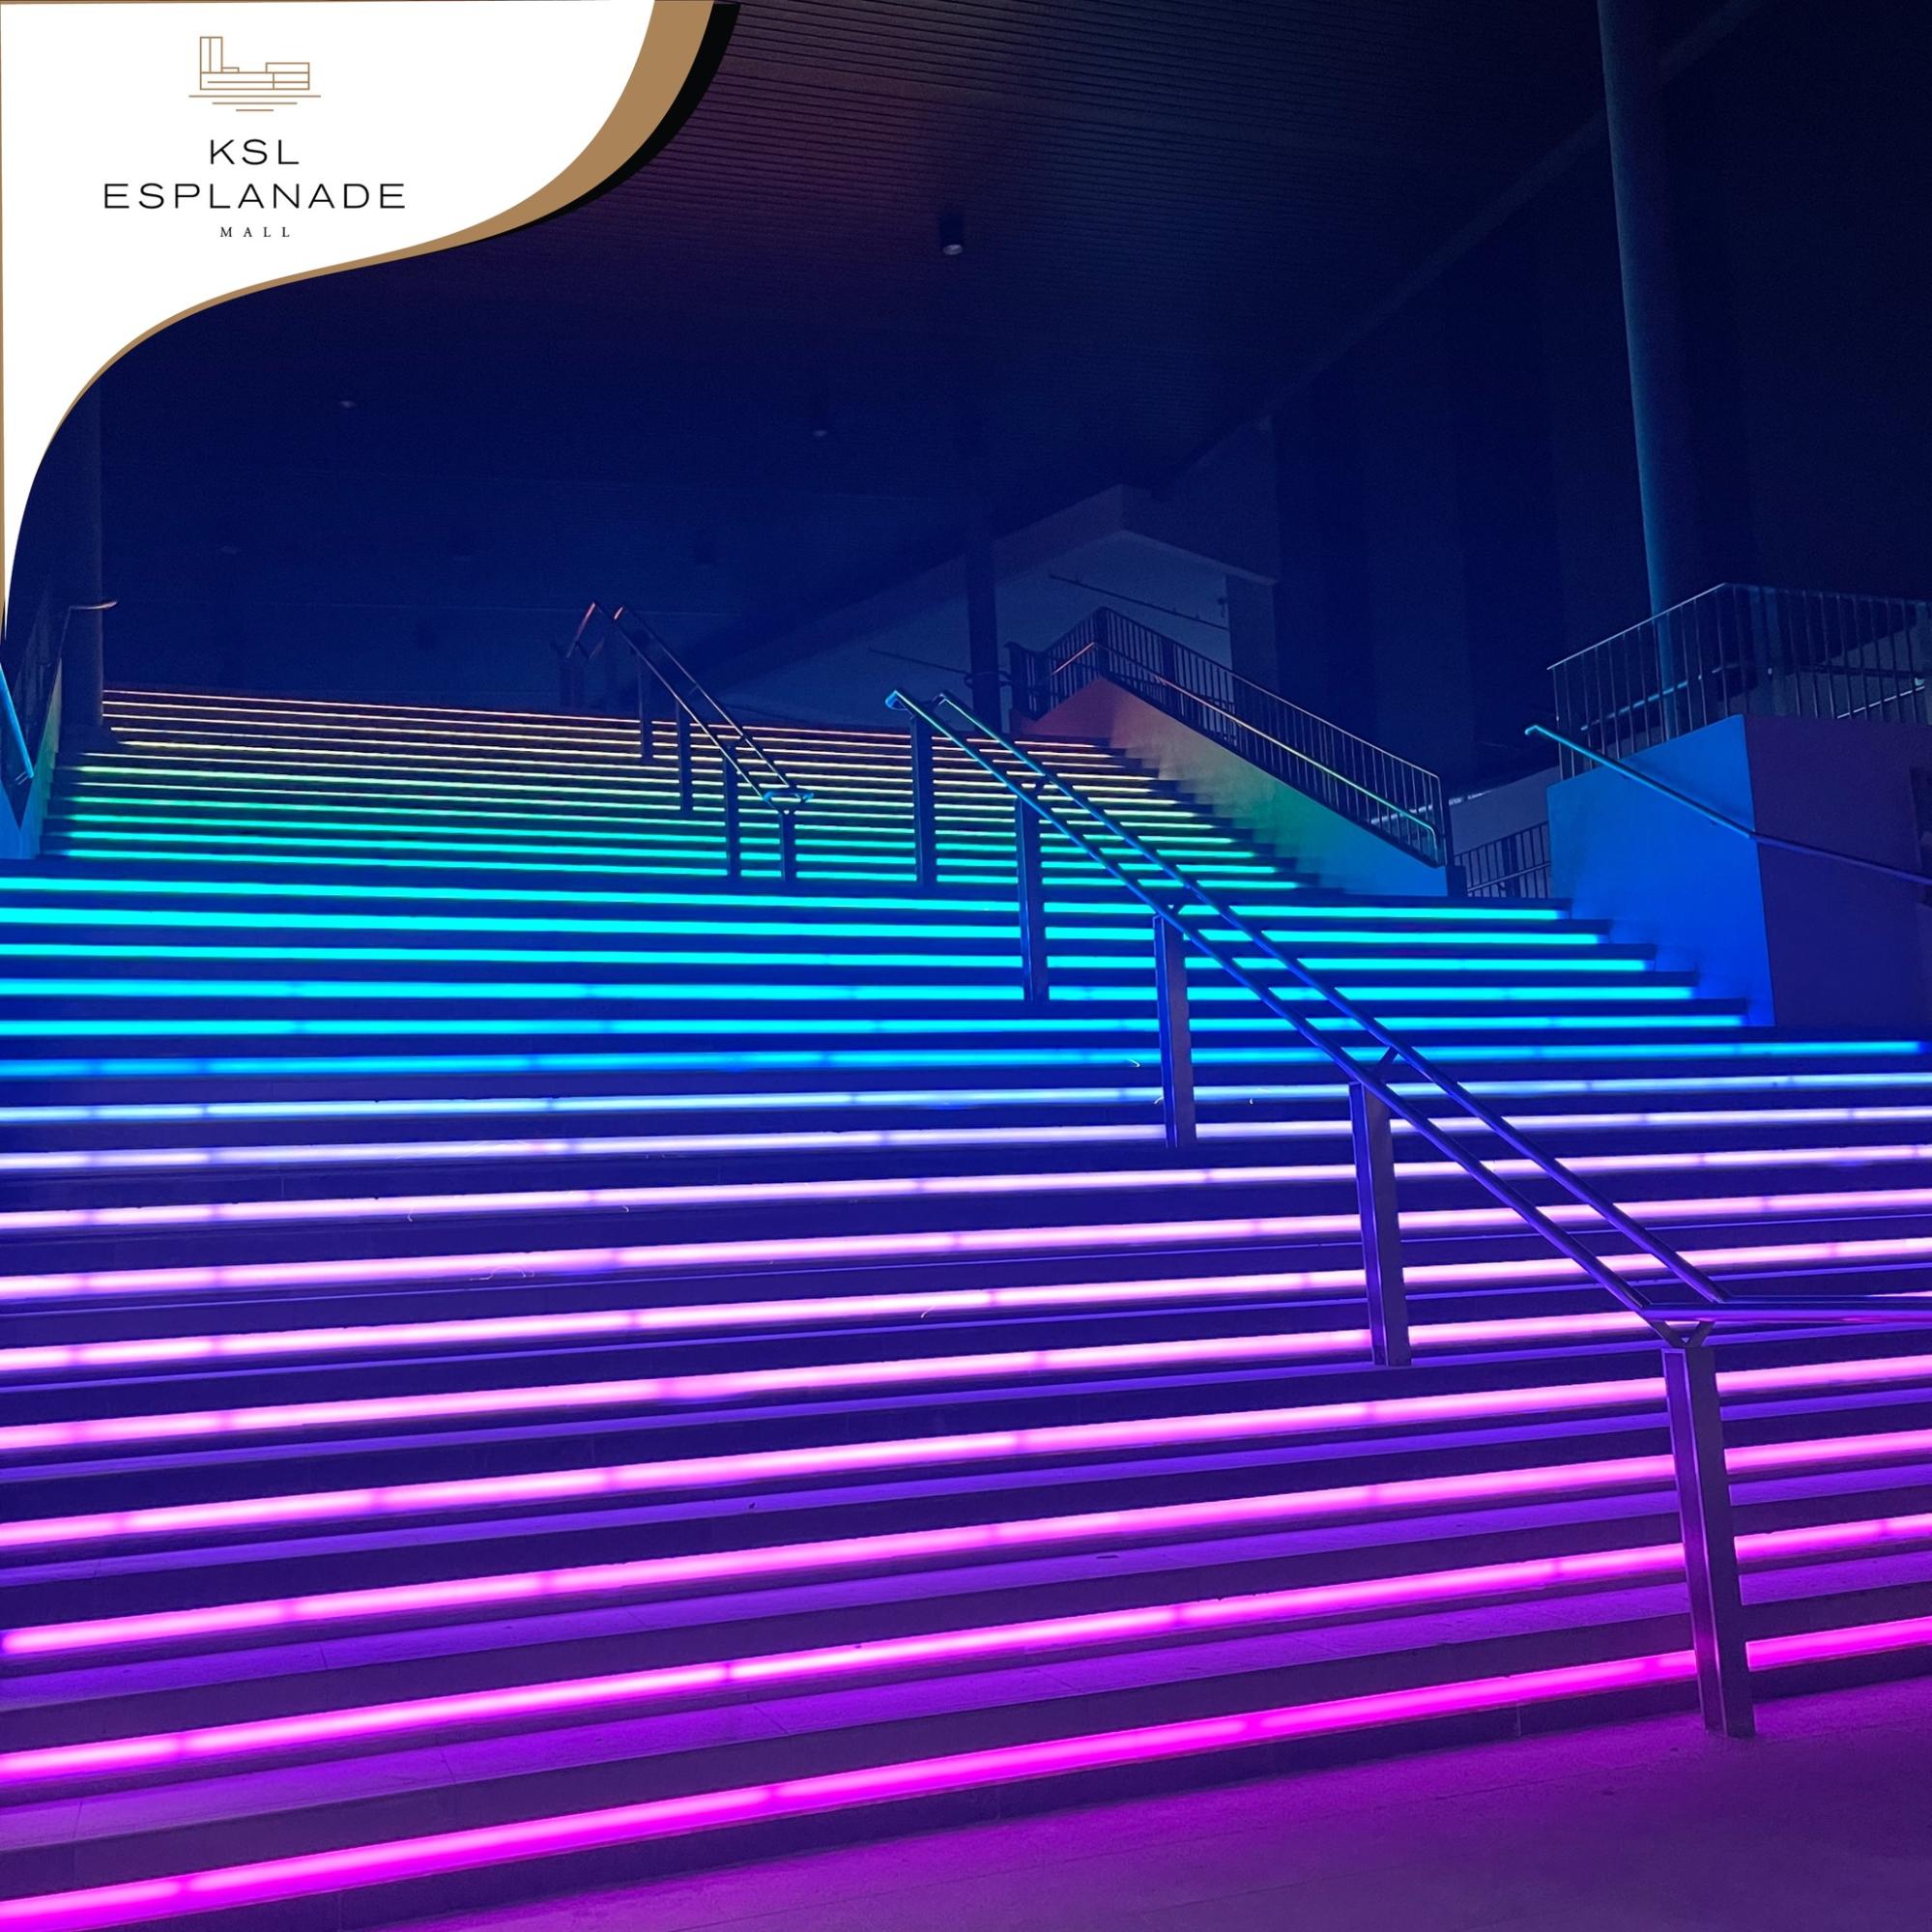 IG-worthy stairs - KSL Esplanade Mall opening in Klang